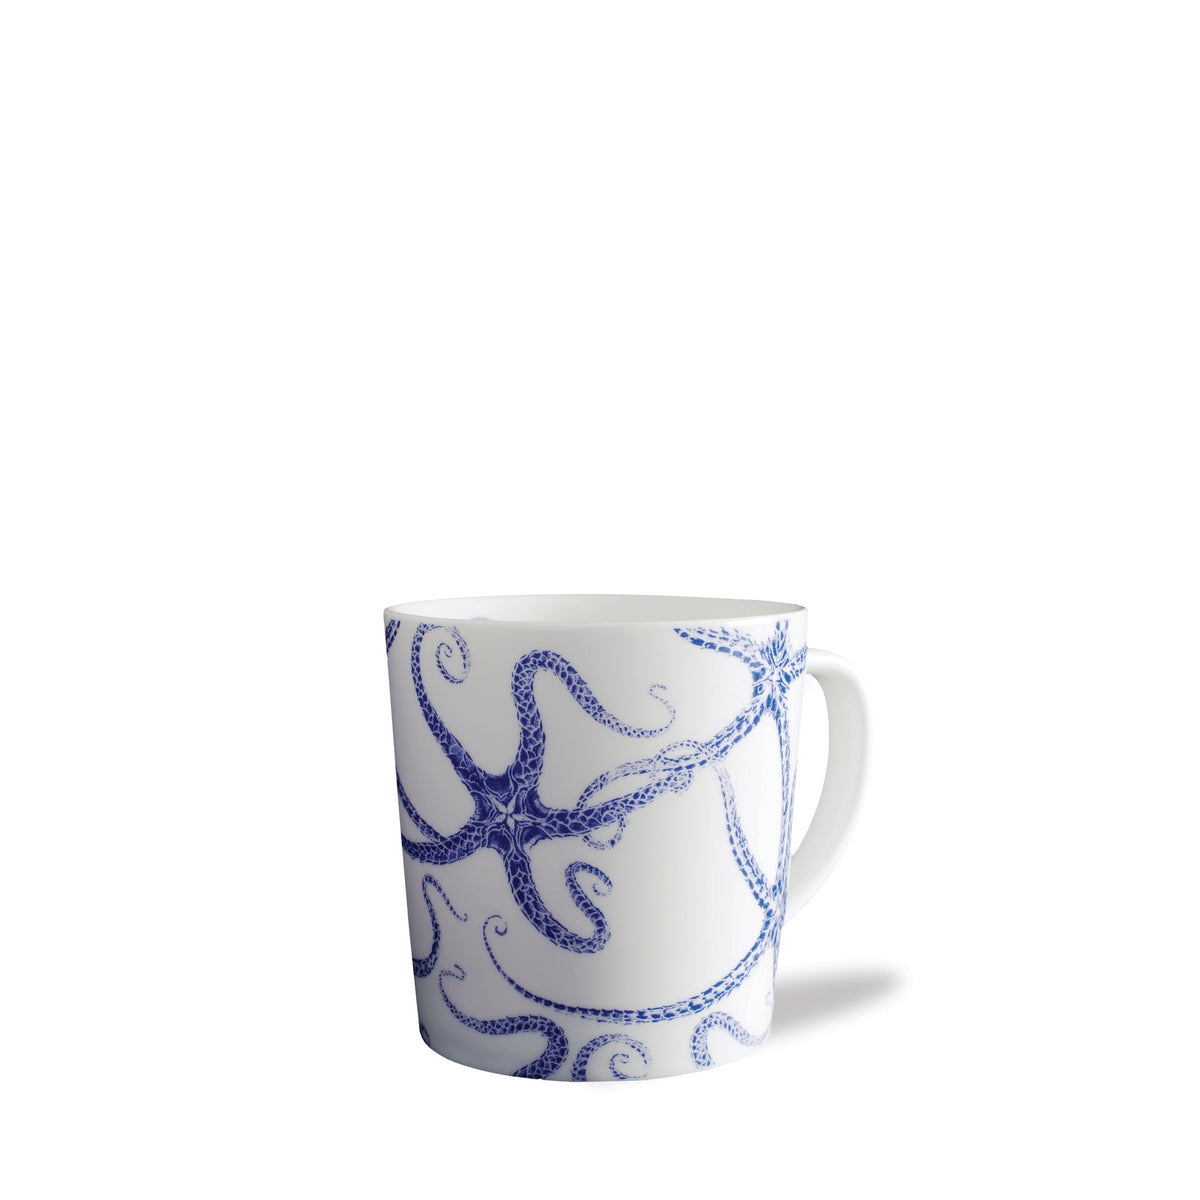 A premium porcelain mug from the Caskata Starfish Starter Set featuring an octopus design.